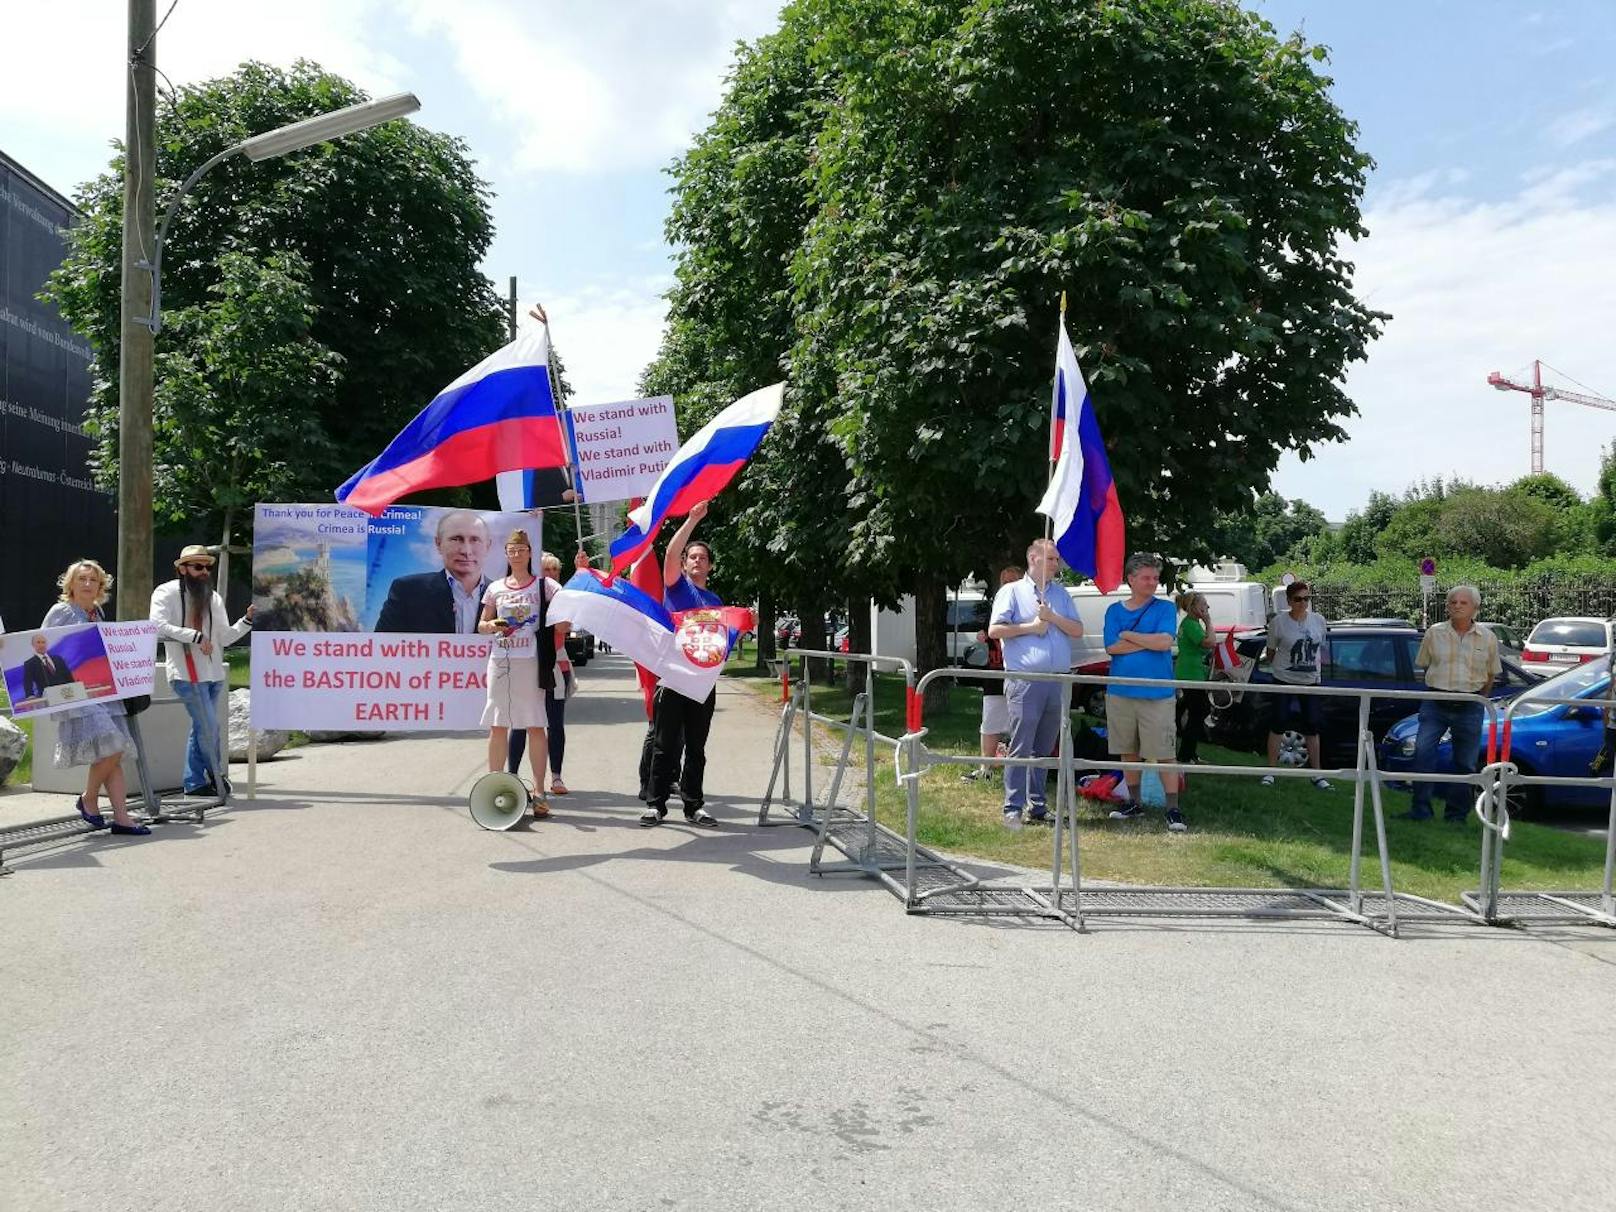 "Wir unterstützen Russland, die Bastion des Friedens auf der Welt", plakatieren die Putin-Fans.